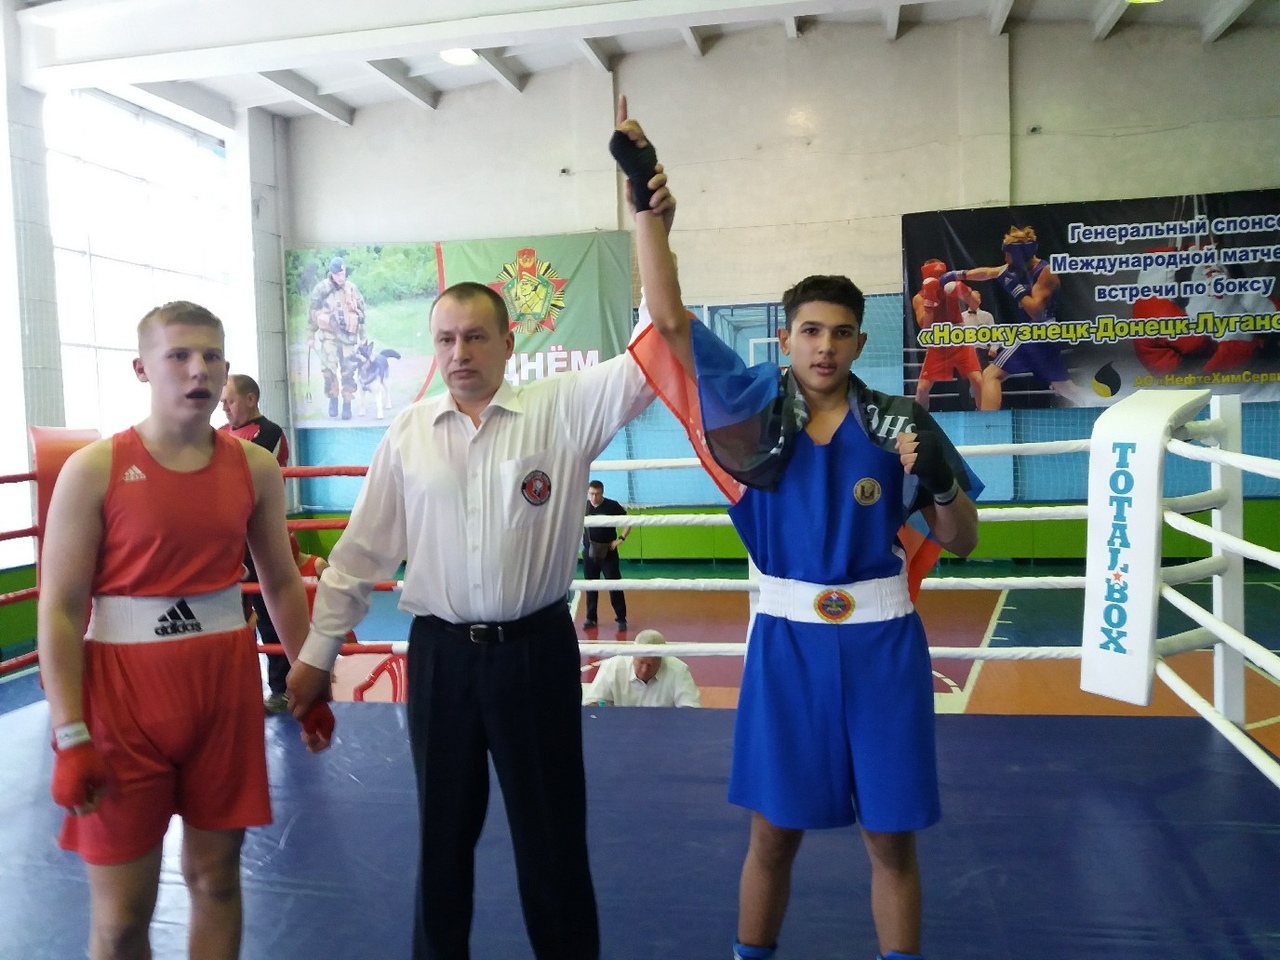 Старший тренер юношеской сборной ДНР по боксу рассказал о реализации годовой программы подготовки спортсменов